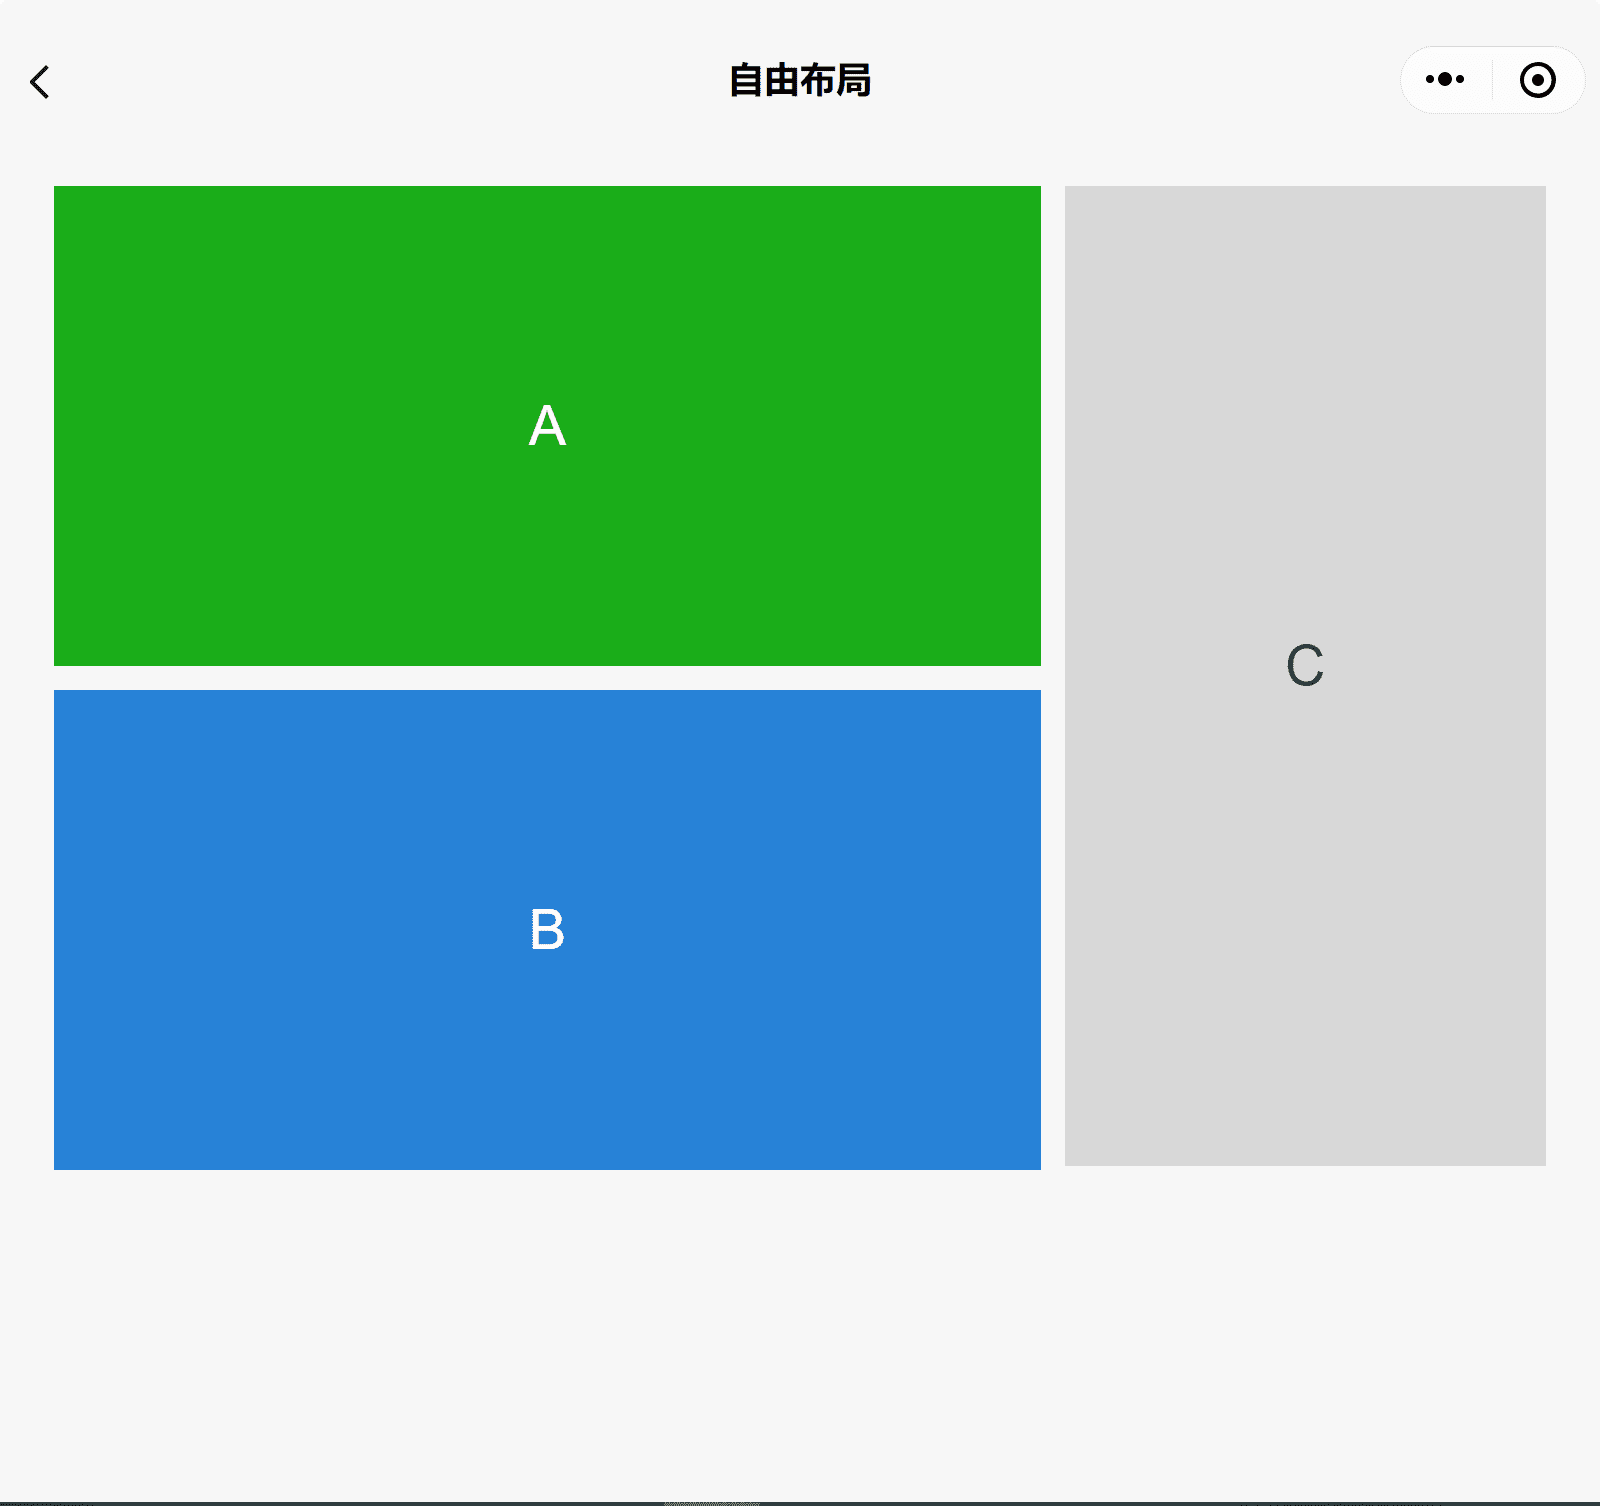 Ứng dụng minh hoạ các thành phần WeChat trong một cửa sổ rộng hiển thị 3 ô A, B và C, trong đó A xếp chồng lên B và C ở cạnh.